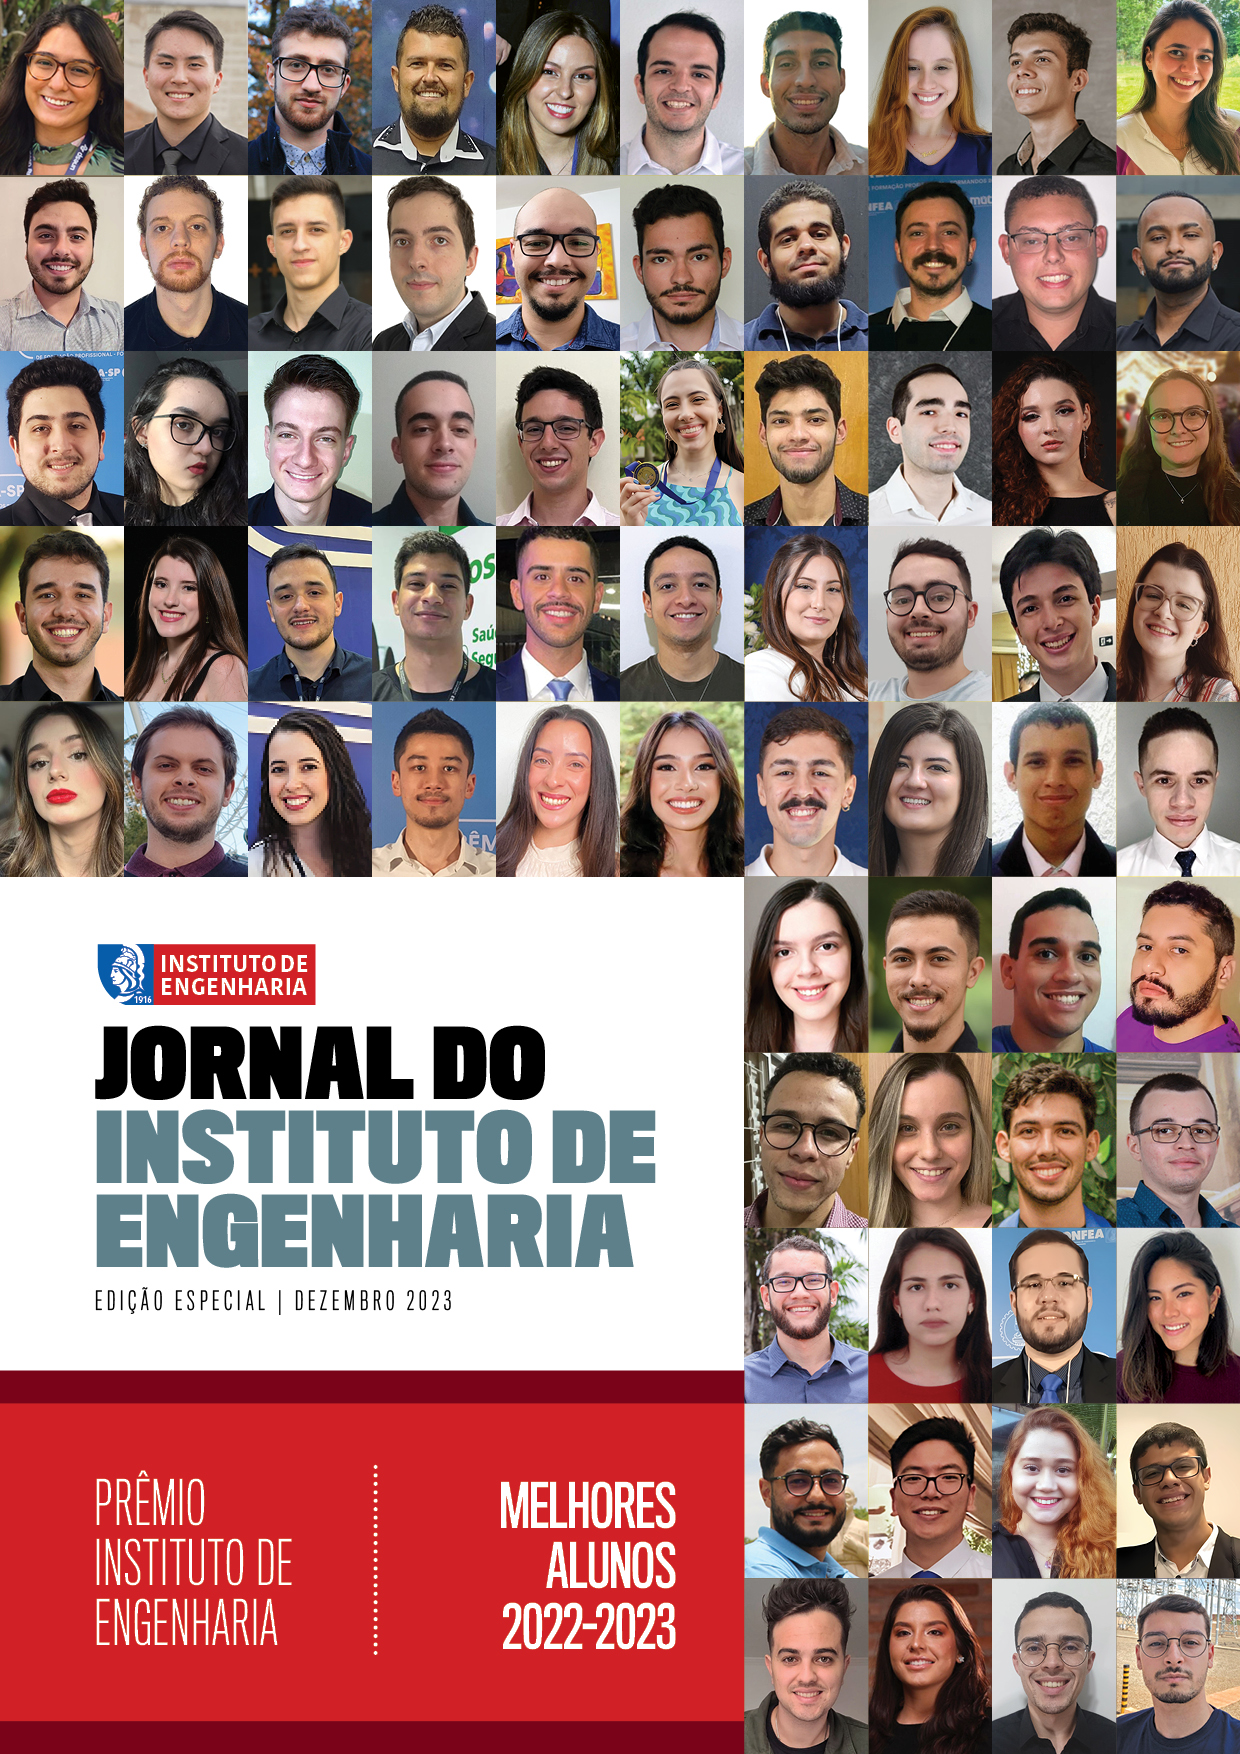 300 Revista Forum Estudante - Novembro 2017 by Forum Estudante - Issuu